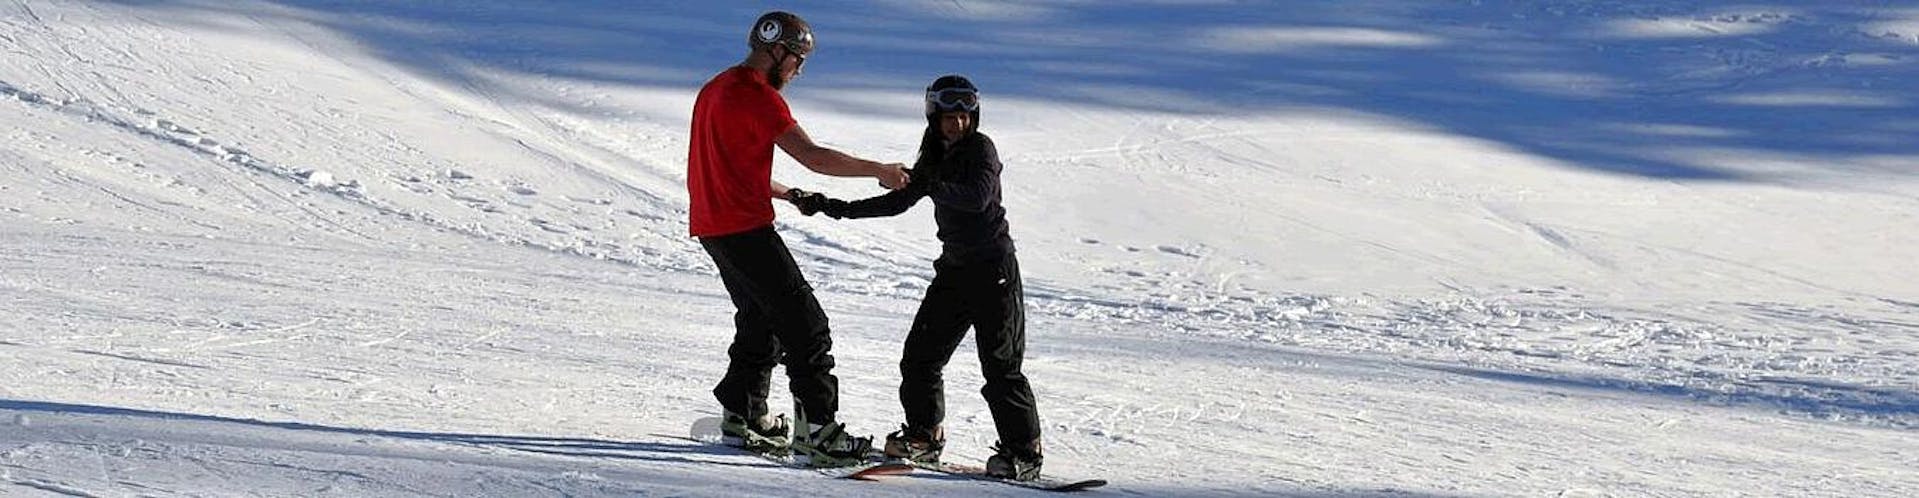 Privé snowboardlessen voor volwassenen van elk niveau.